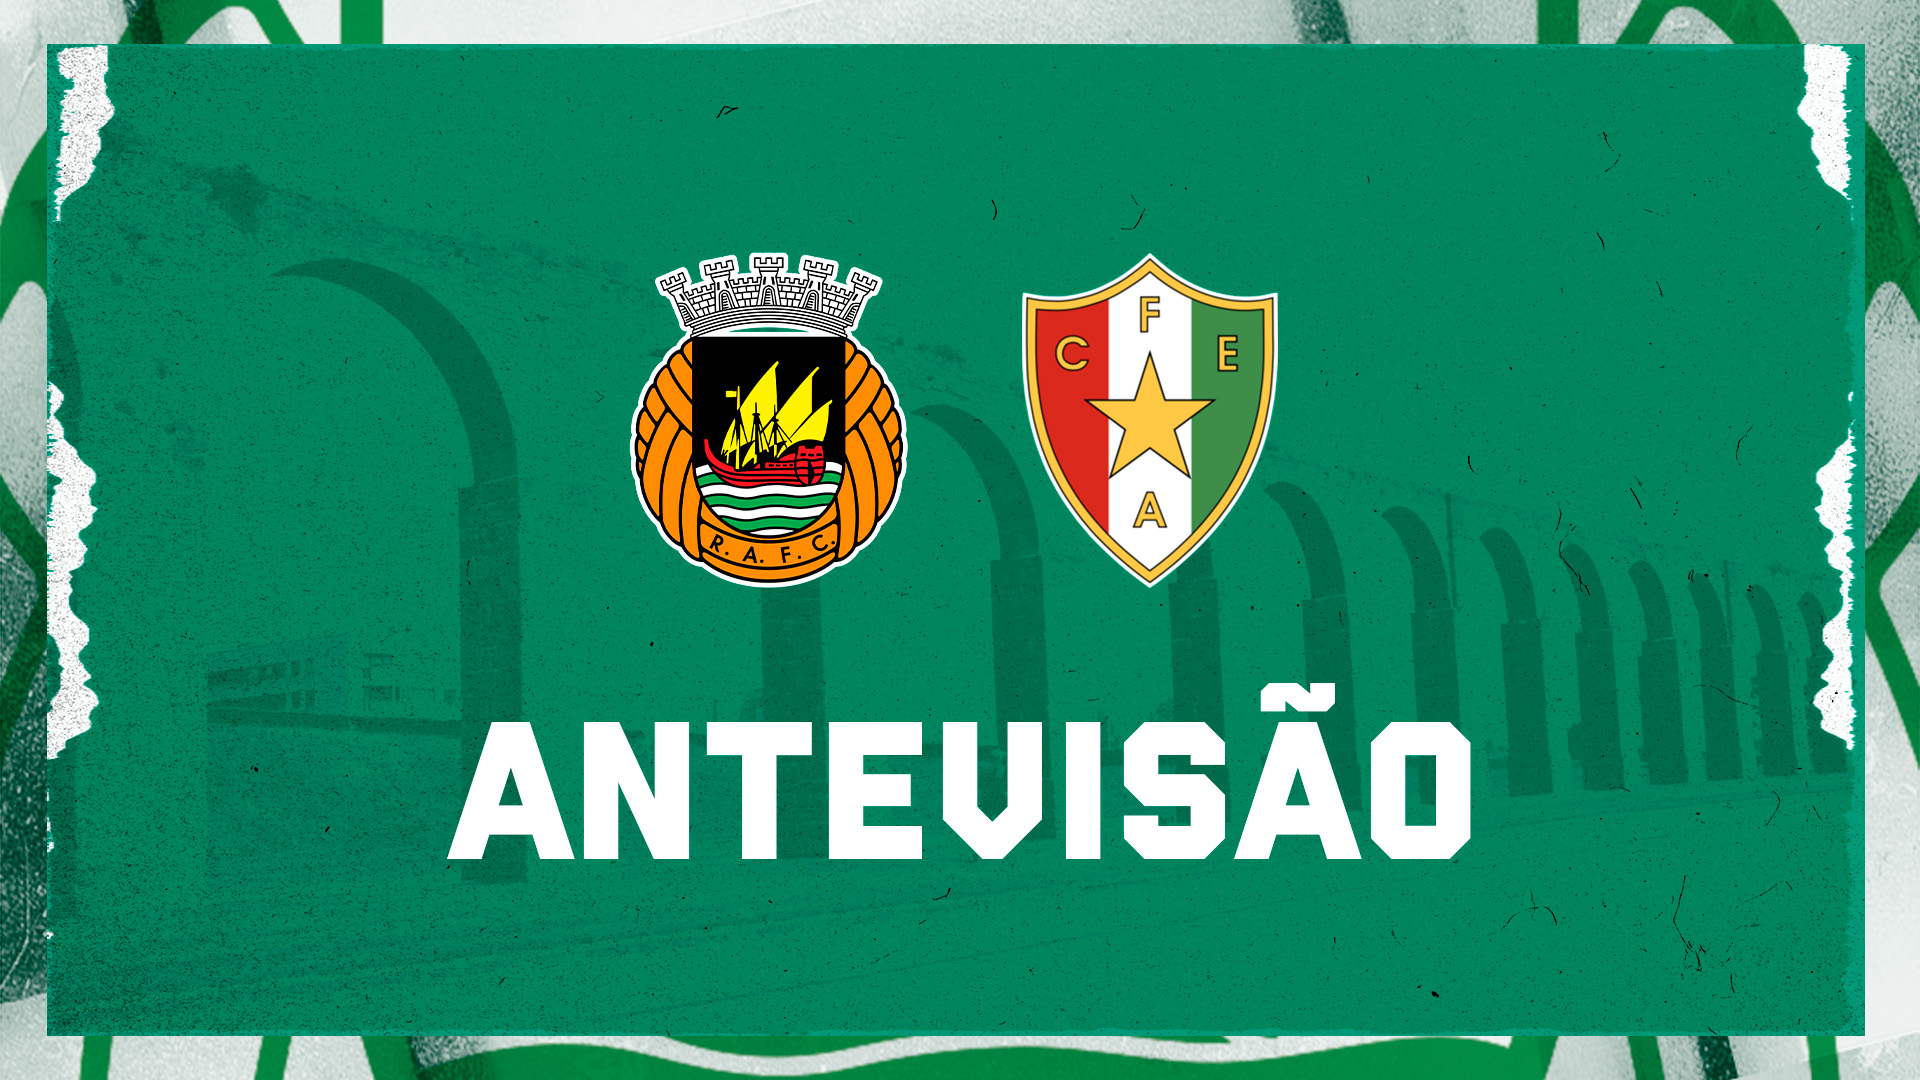 Liga Betclic: Empate entre Rio Ave e Estrela da Amadora